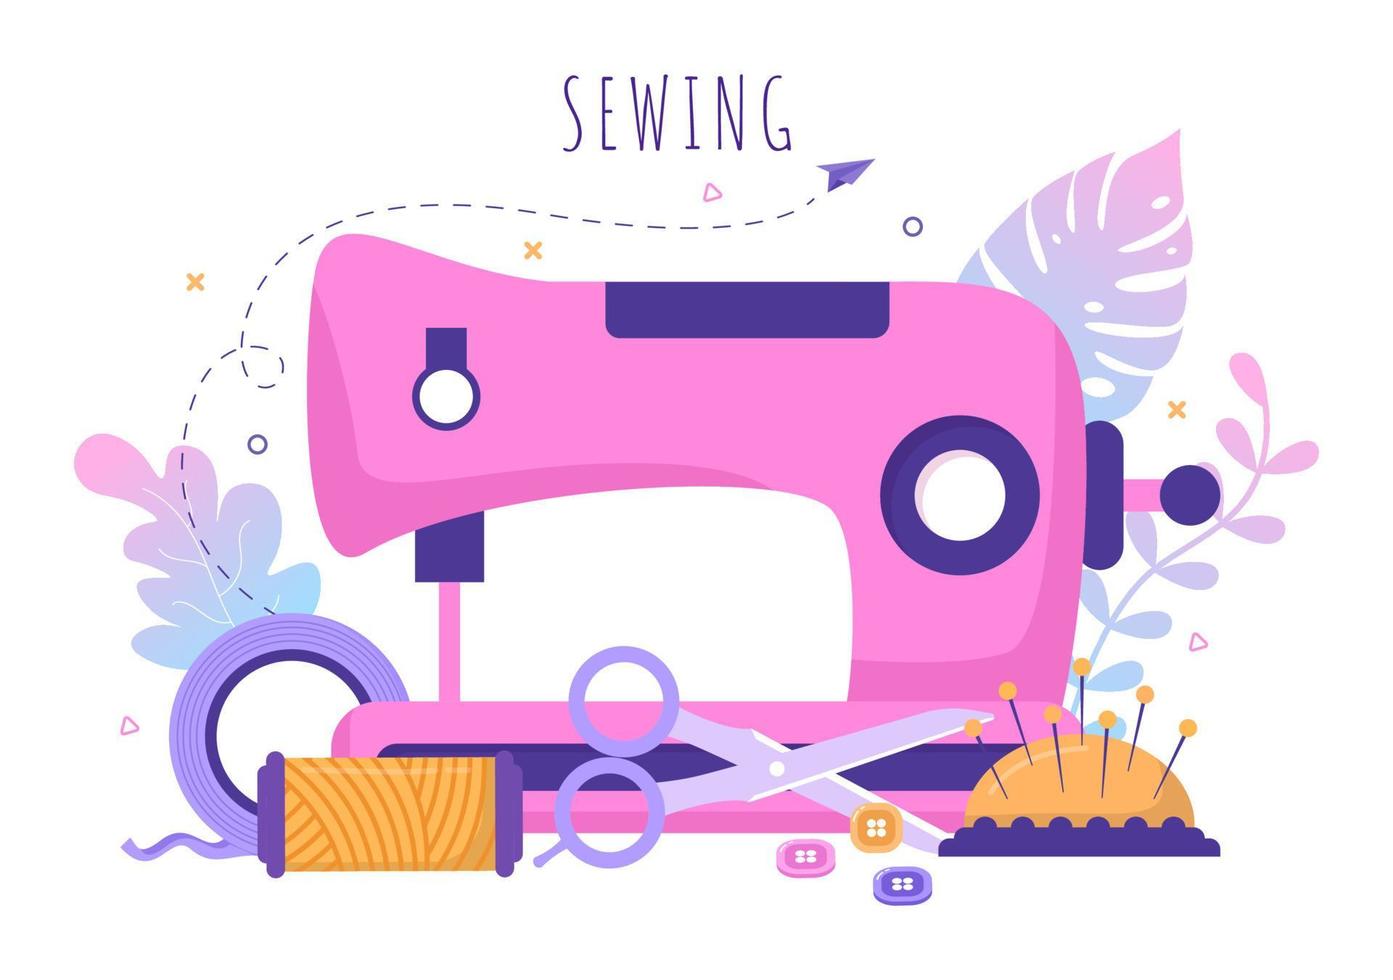 kleermaker met naaien, doek, speldenkussen, draden, modeontwerper, naaister, schaar en meten om kleding te maken in een platte achtergrondillustratie vector